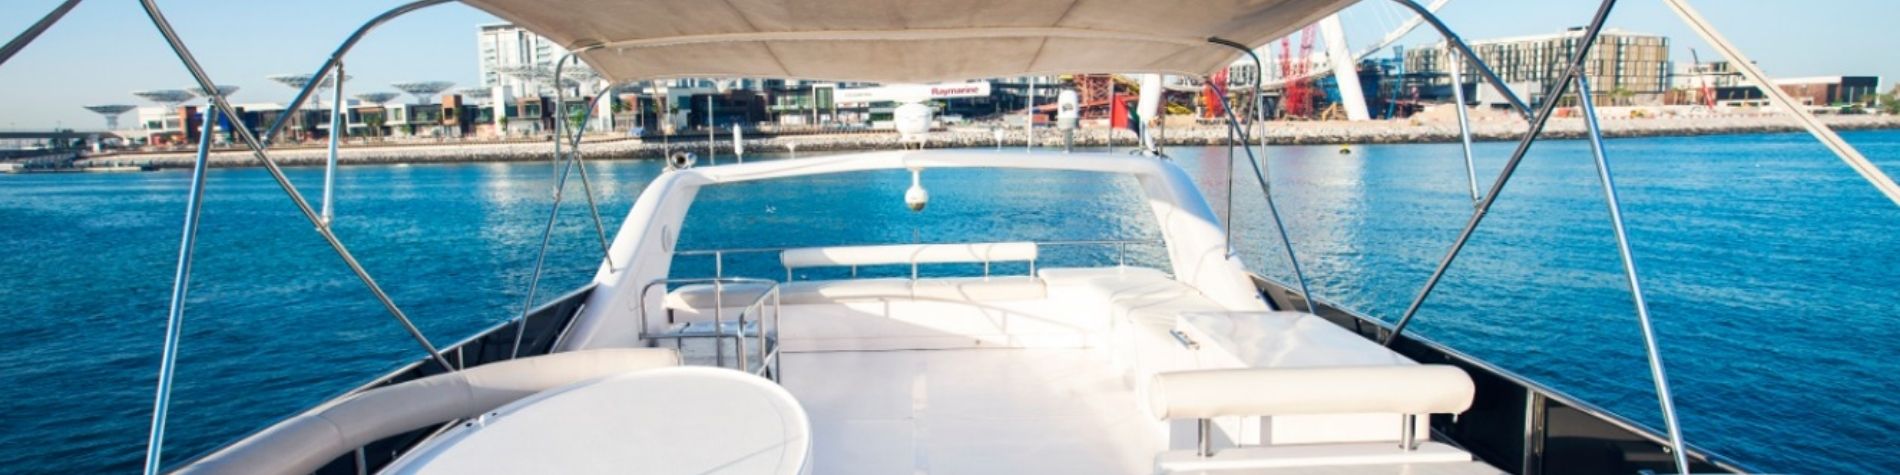 Duretti 80 FT Yacht Rental Dubai